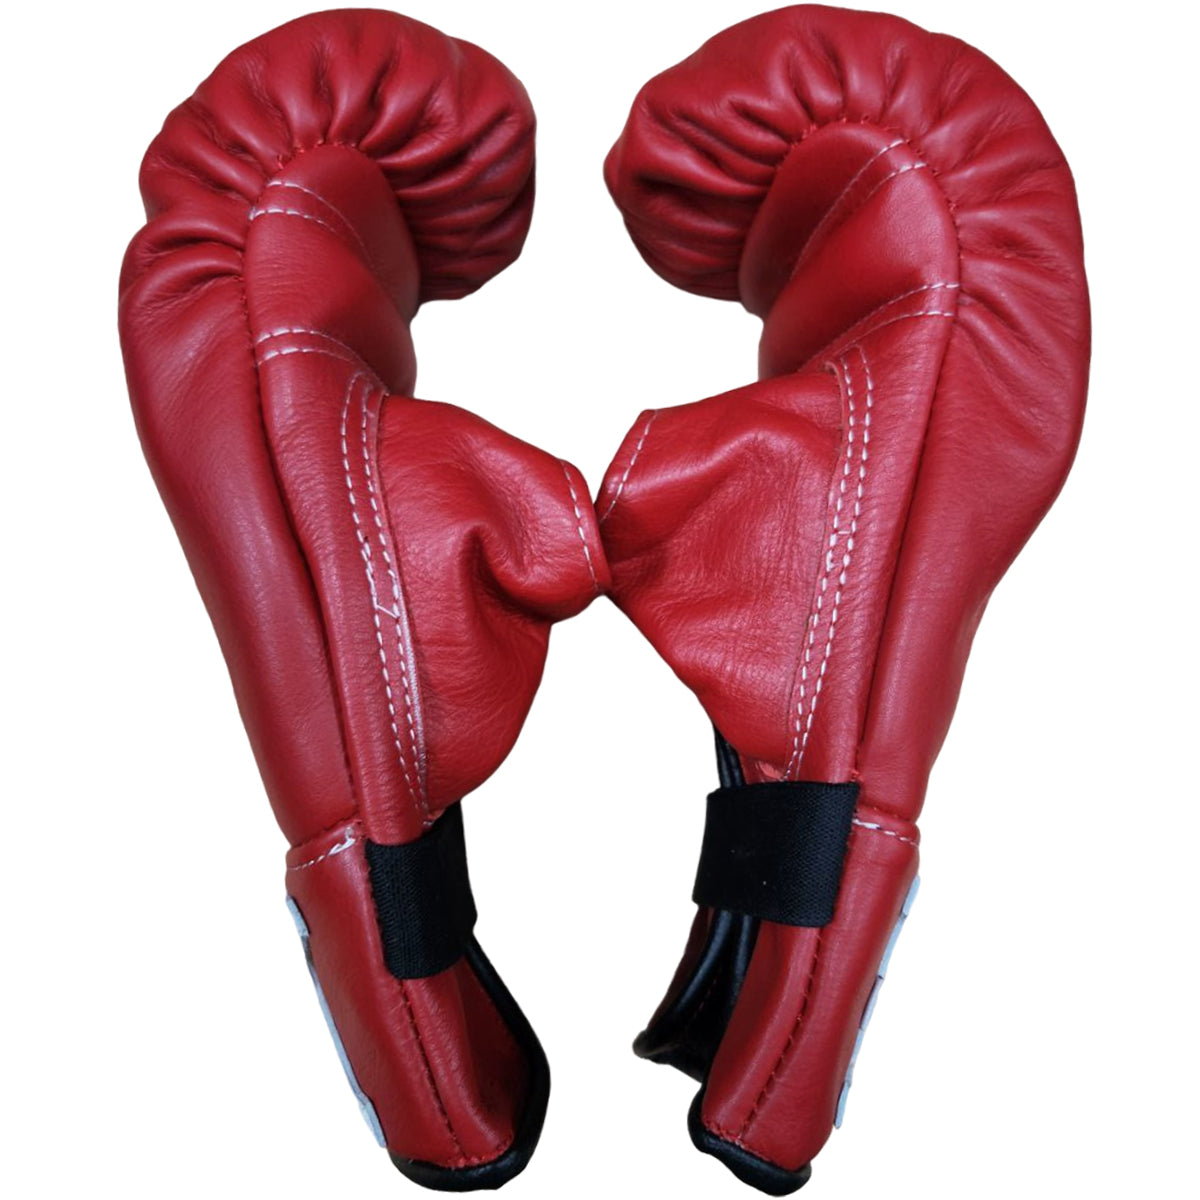 Bag Gloves K Brand K-KBG Red Open Thumb  Muay Thai